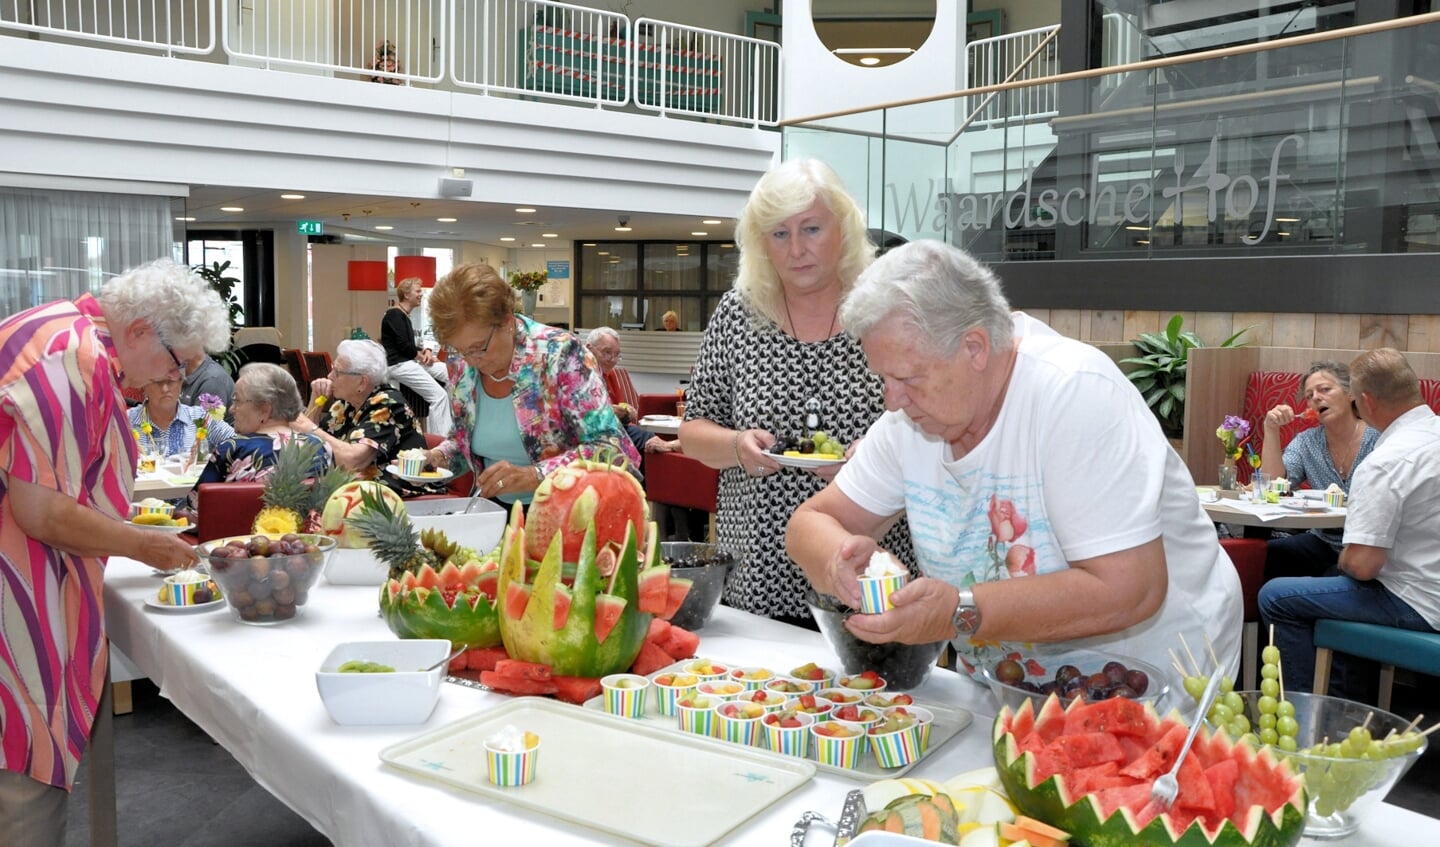 Cliënten van Waardeburgh genieten van zomergezelligheid met fruit